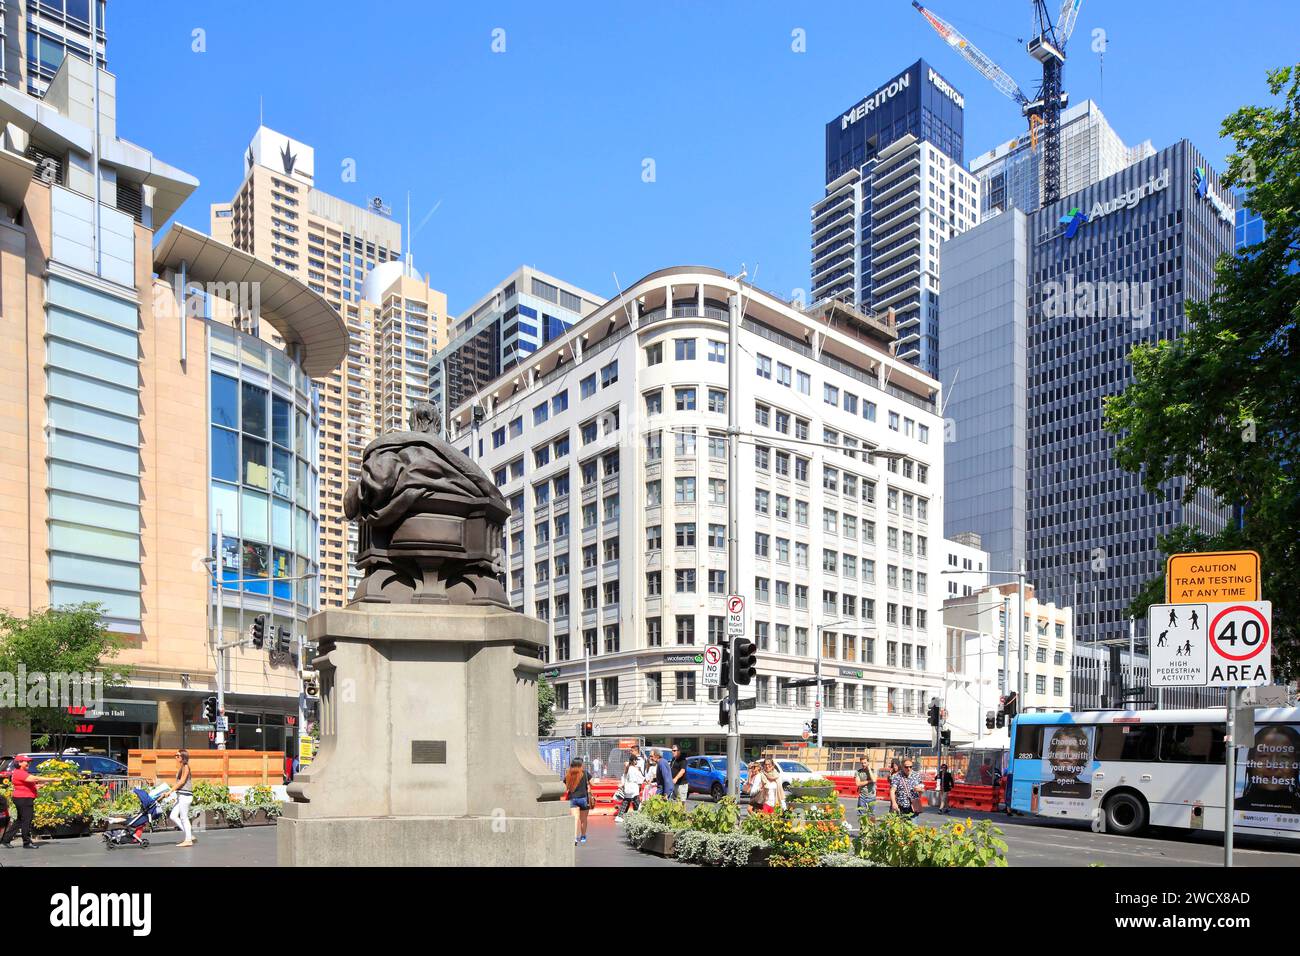 Australie, Nouvelle-Galles du Sud, Sydney, quartier central des affaires (CBD), intersection de Park Street et George St, statue (de derrière) de la reine Victoria Banque D'Images